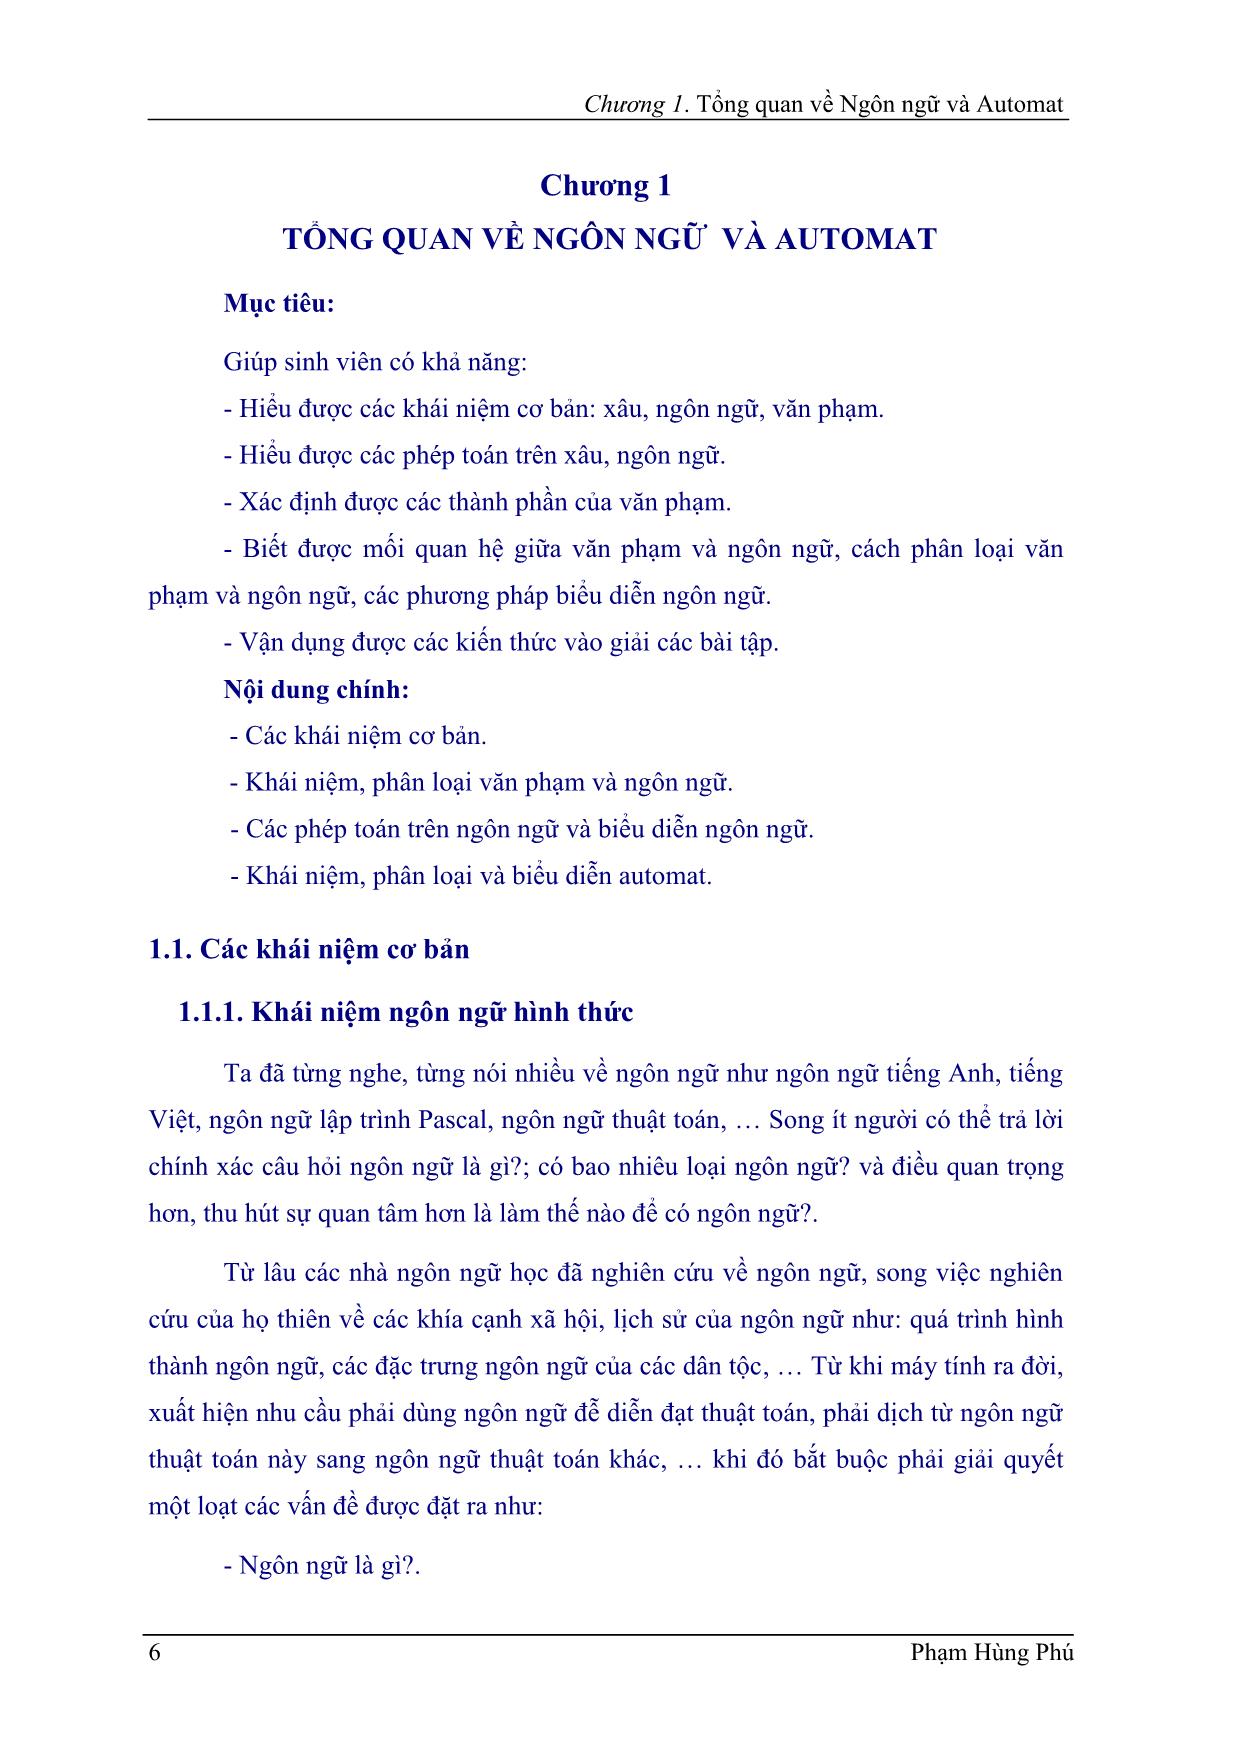 Giáo trình Ngôn ngữ hình thức trang 7